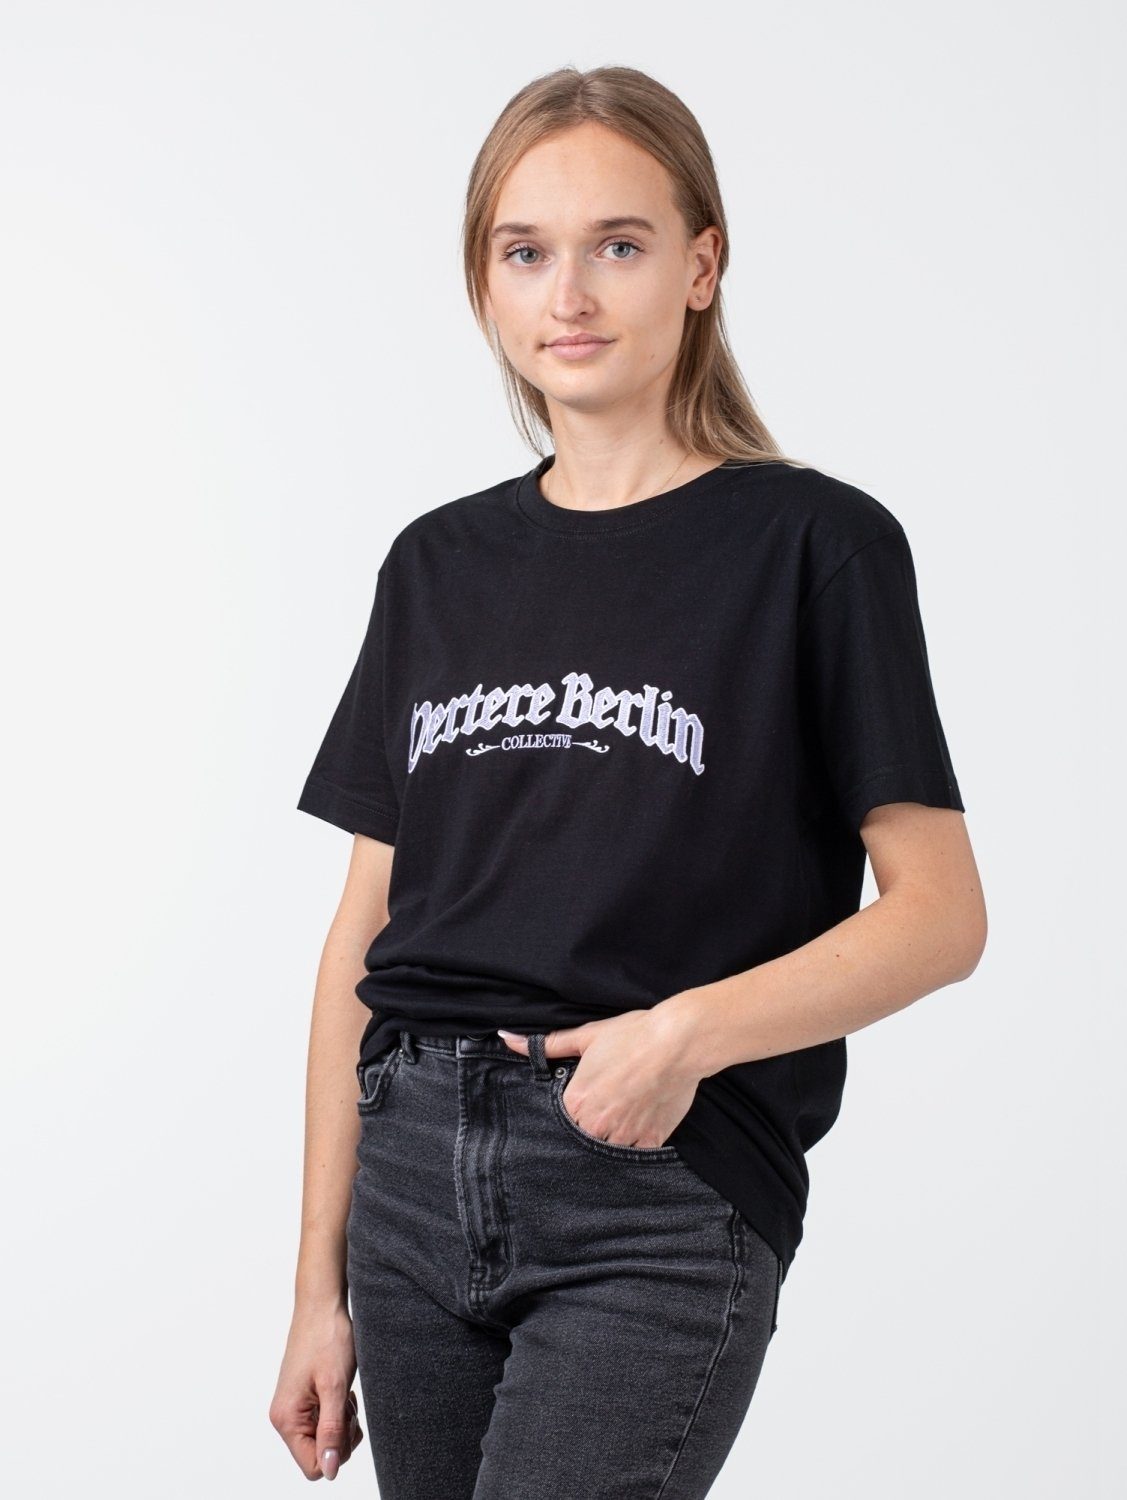 Vertere Berlin Tee Collective T-Shirt Berlin Vertere